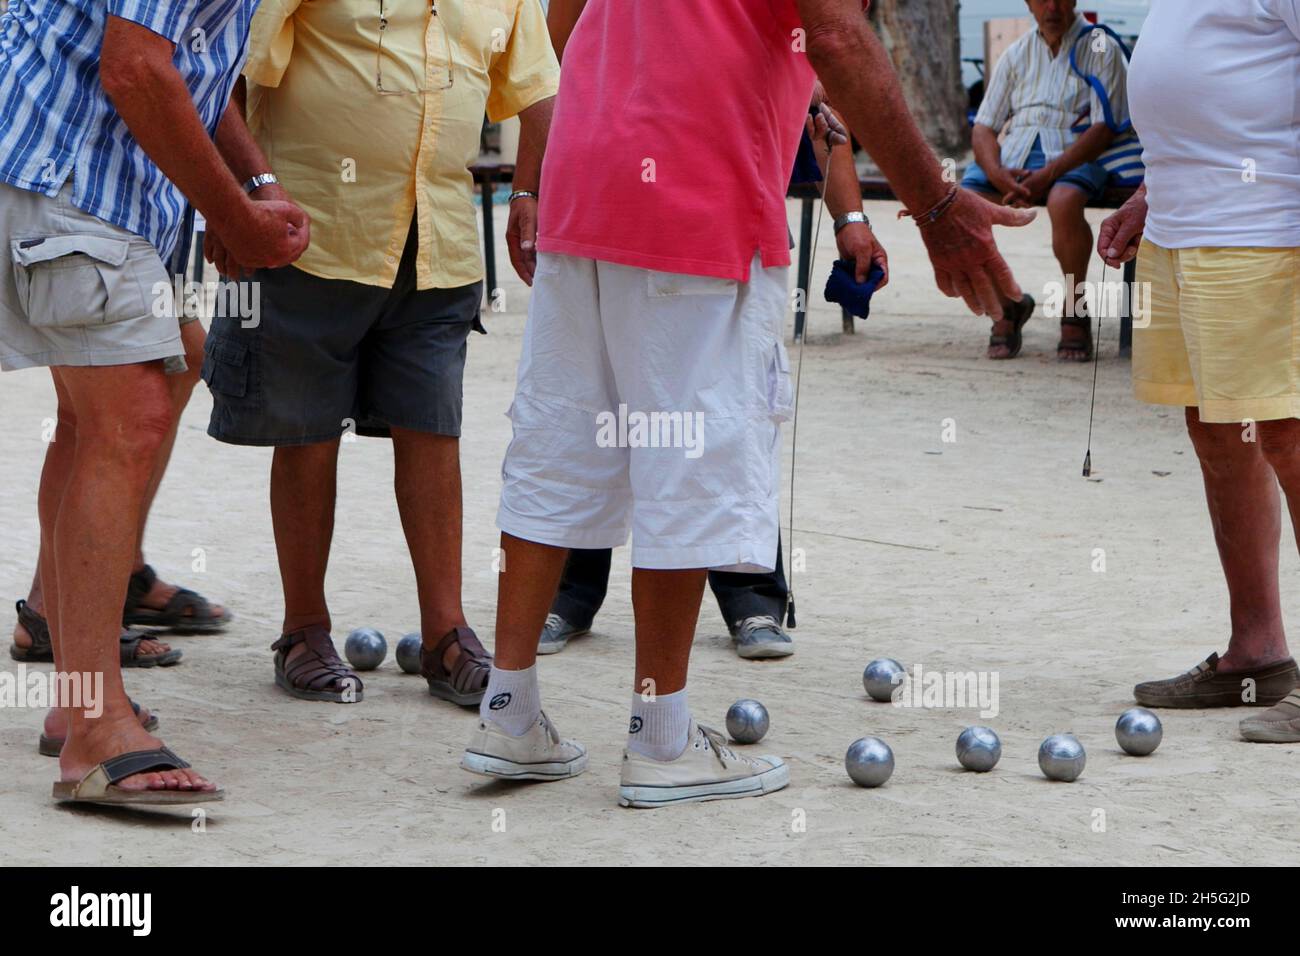 Franzosen, die gerade -auf einem öffentlichen Platz- Boule spielen. Keine Erkennbarkeit, da nur Beine. Cannes, Frankreich. Stock Photo